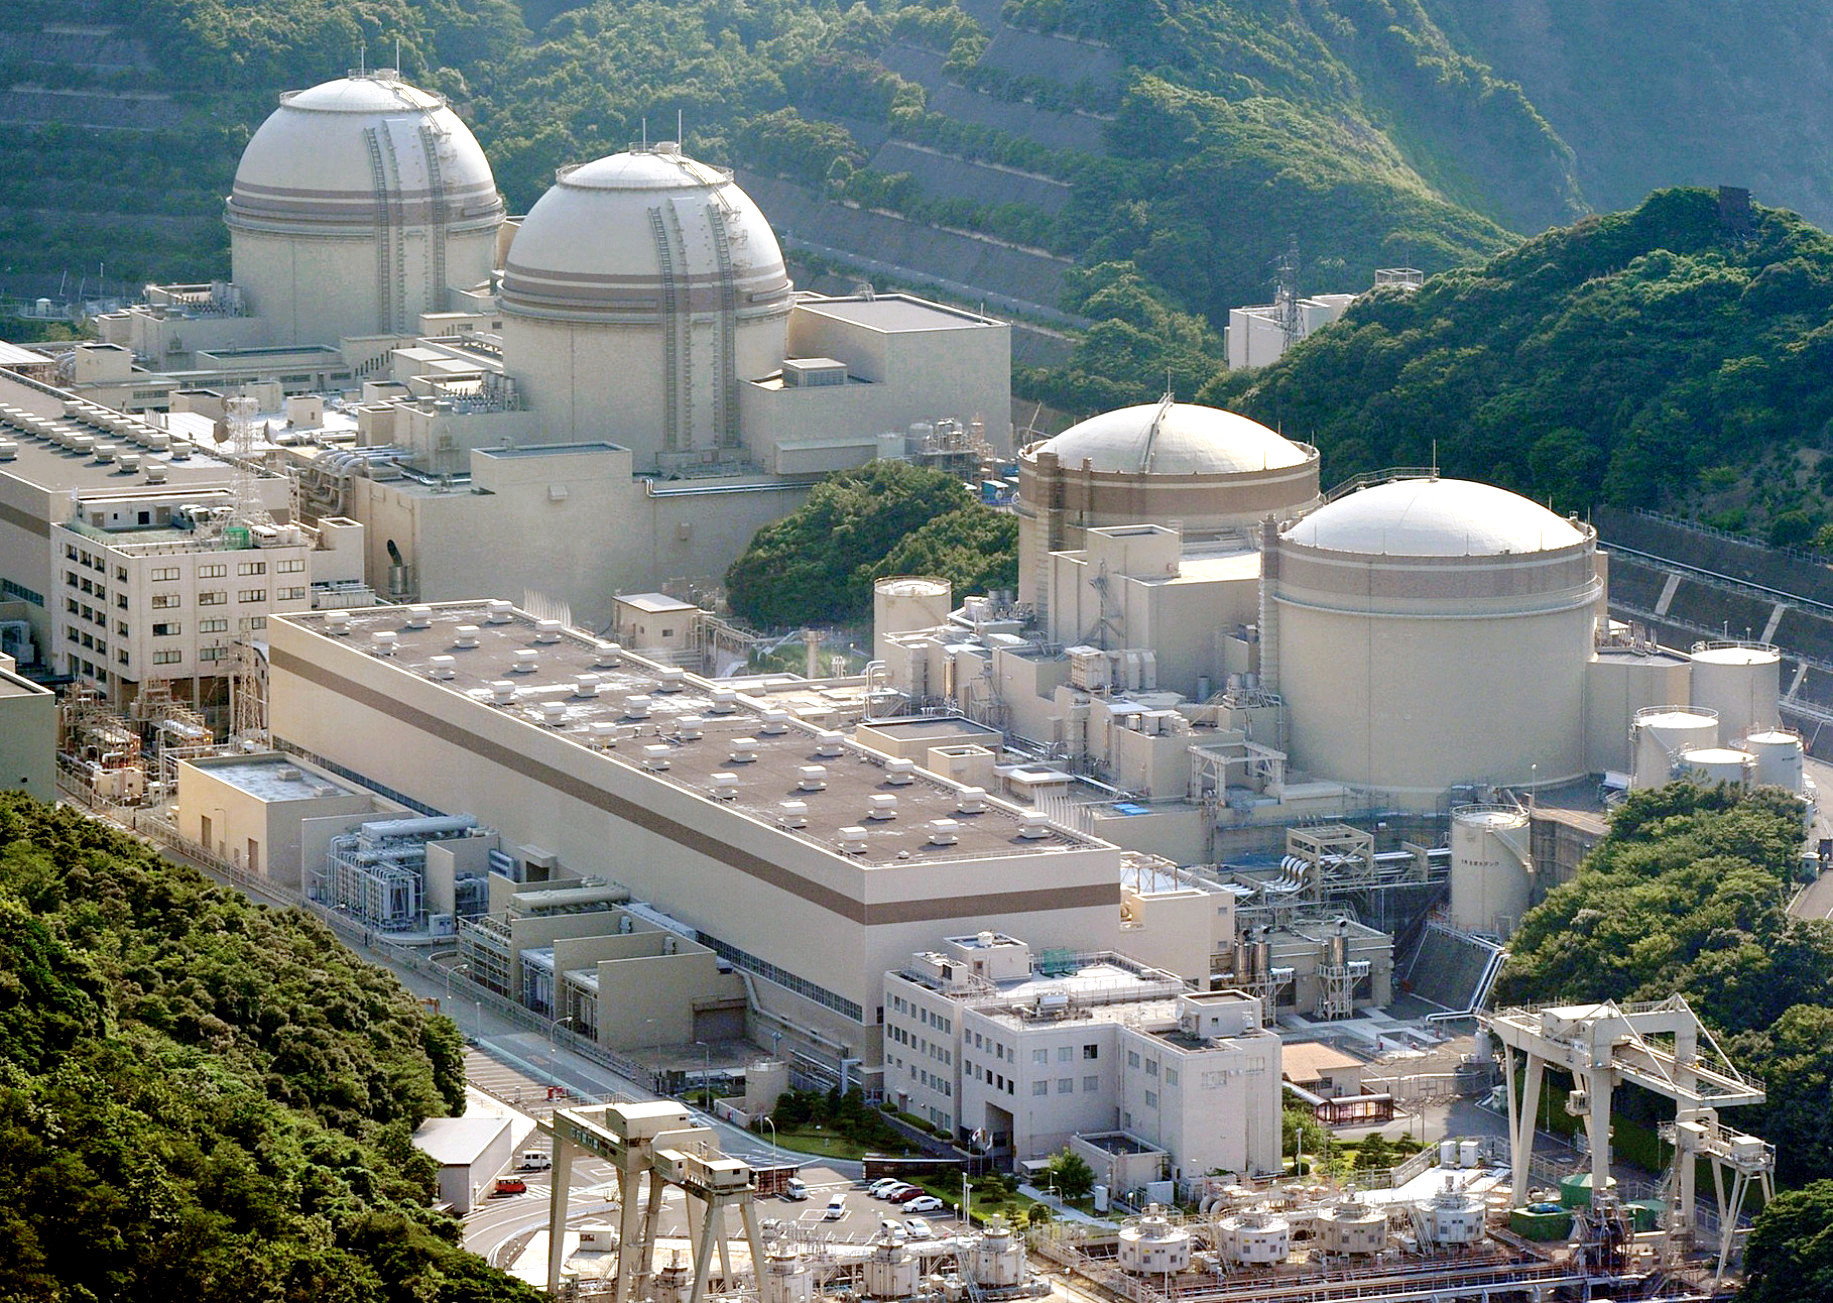 Tỷ lệ điện hạt nhật Nhật Bản sẽ tăng do kế hoạch tái khởi động nhà máy điện hạt nhân